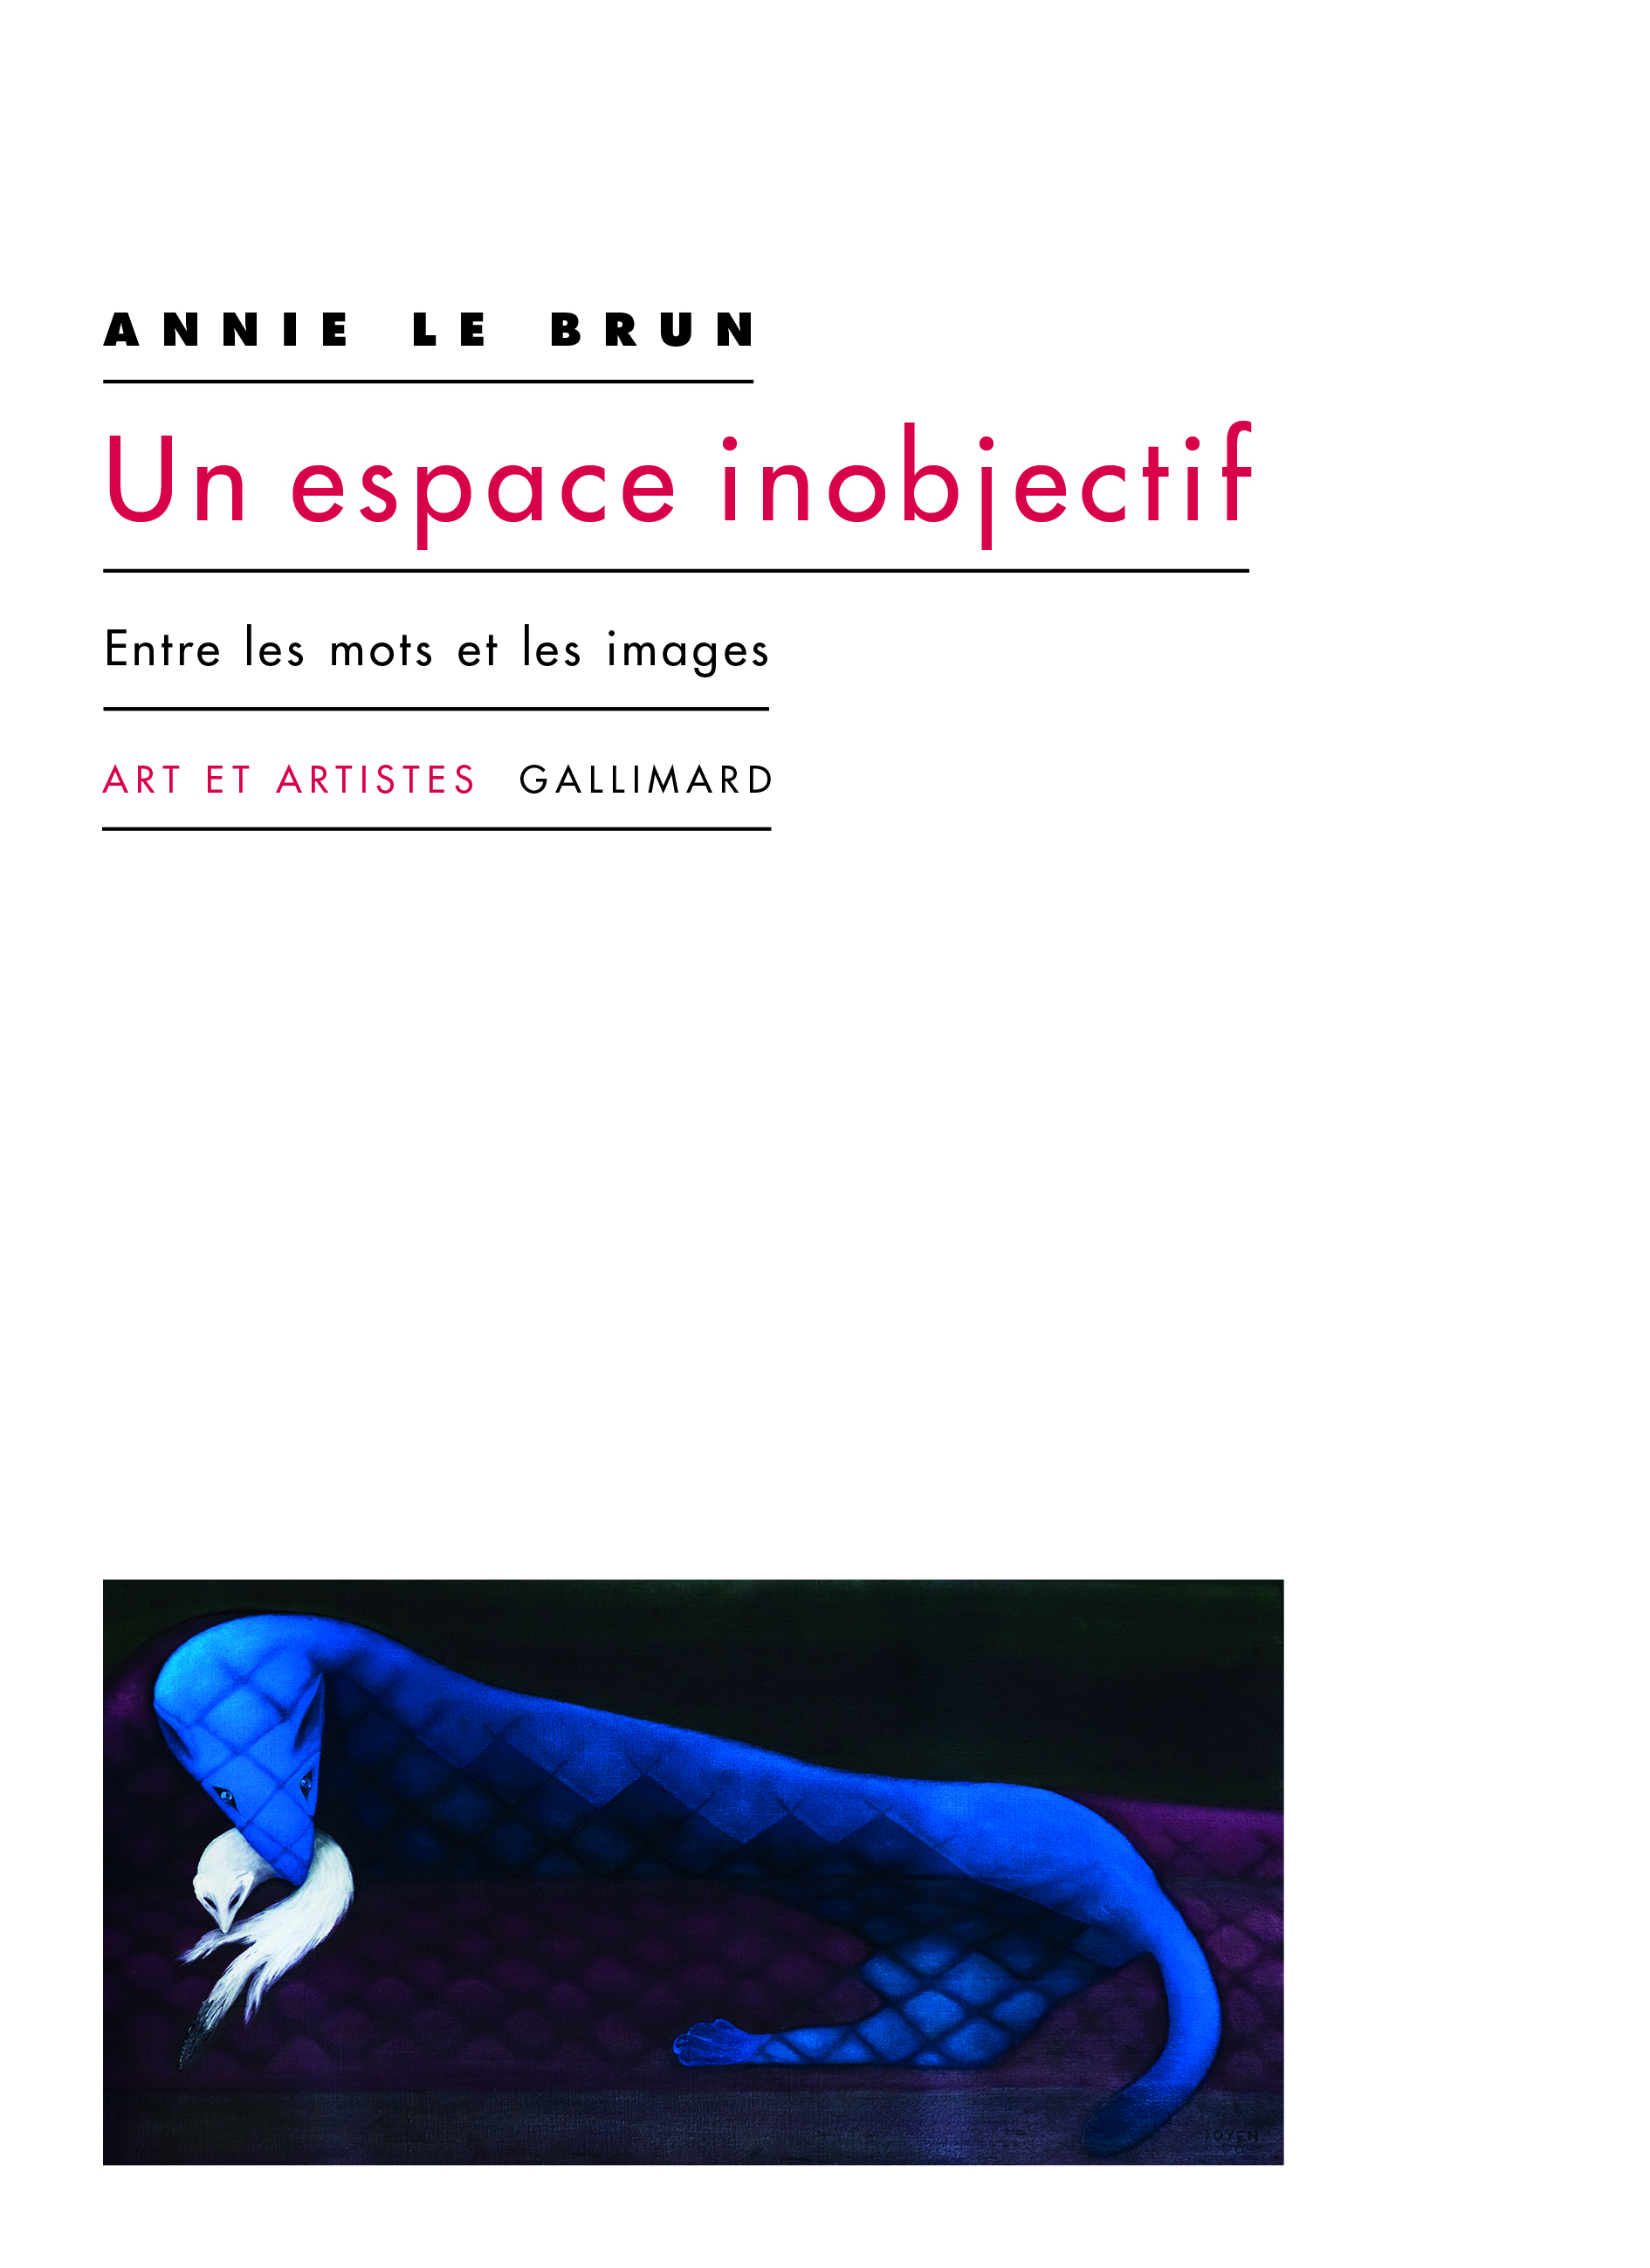 A. Le Brun, Un espace inobjectif. Entre les mots et les images